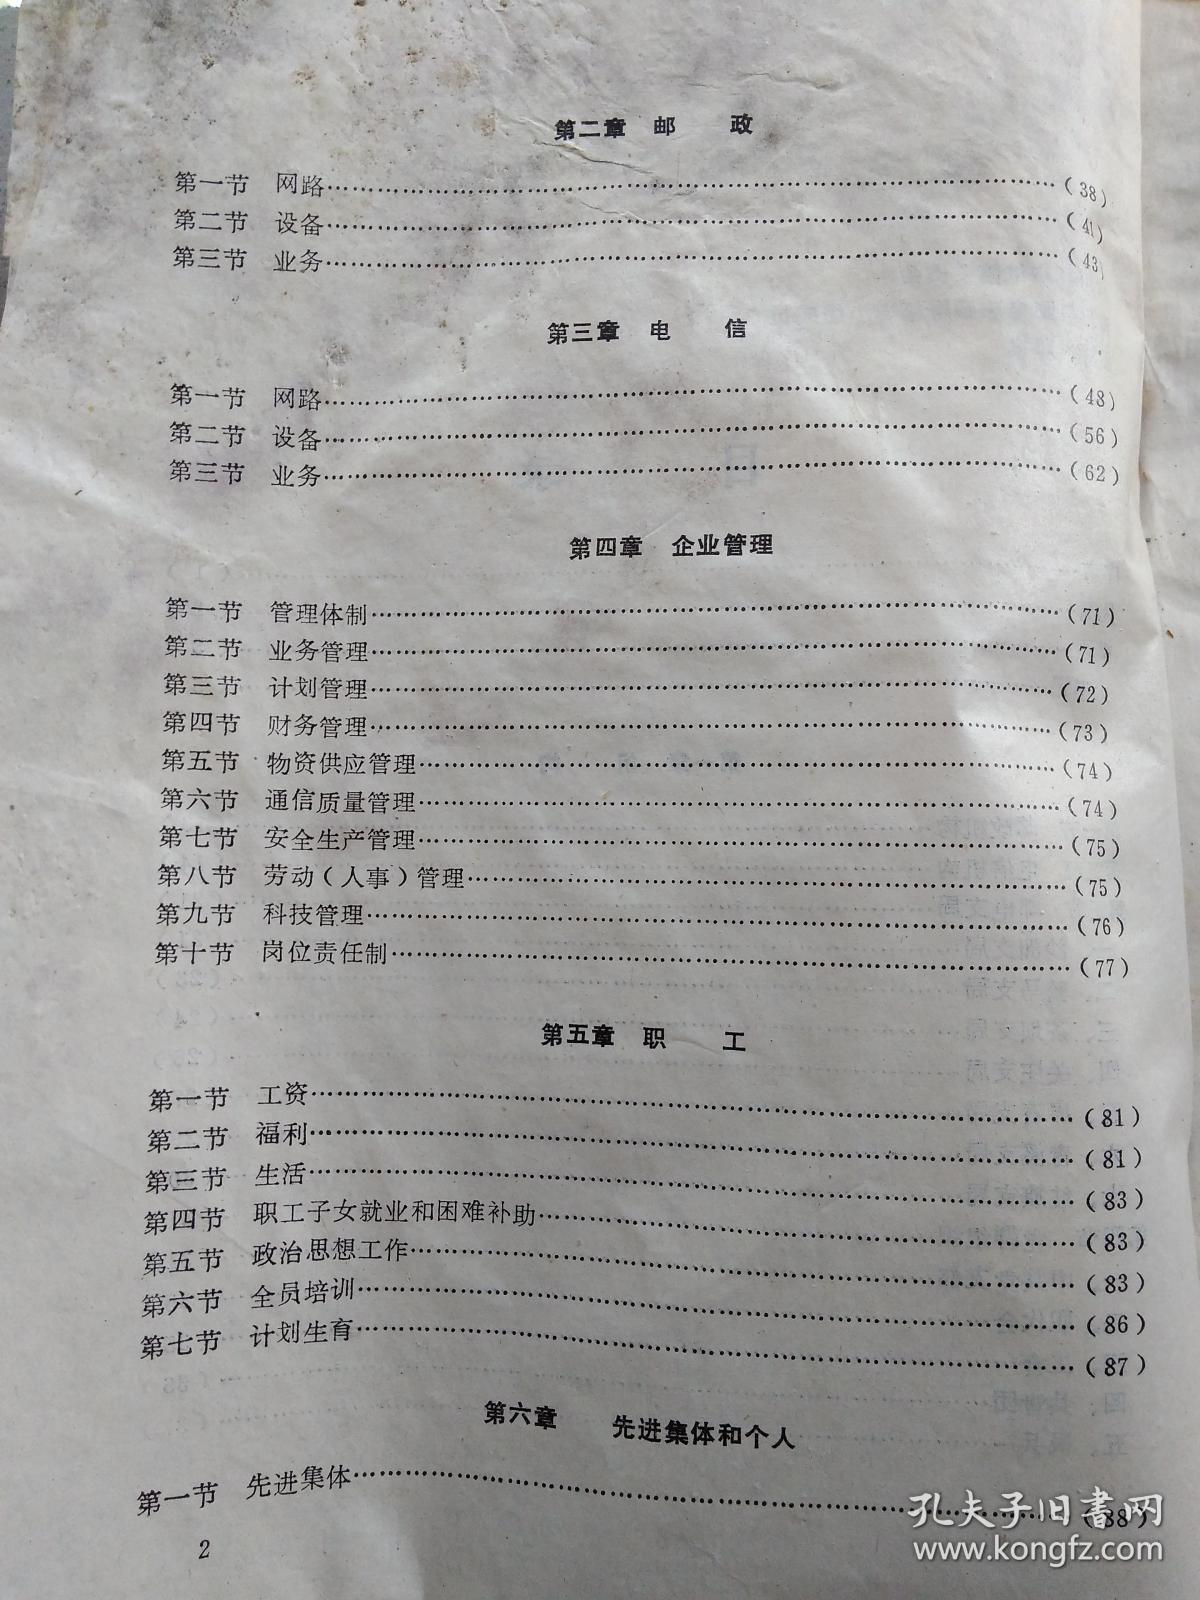 青川县邮电志(附资料图16页)1987年12月.平装16开